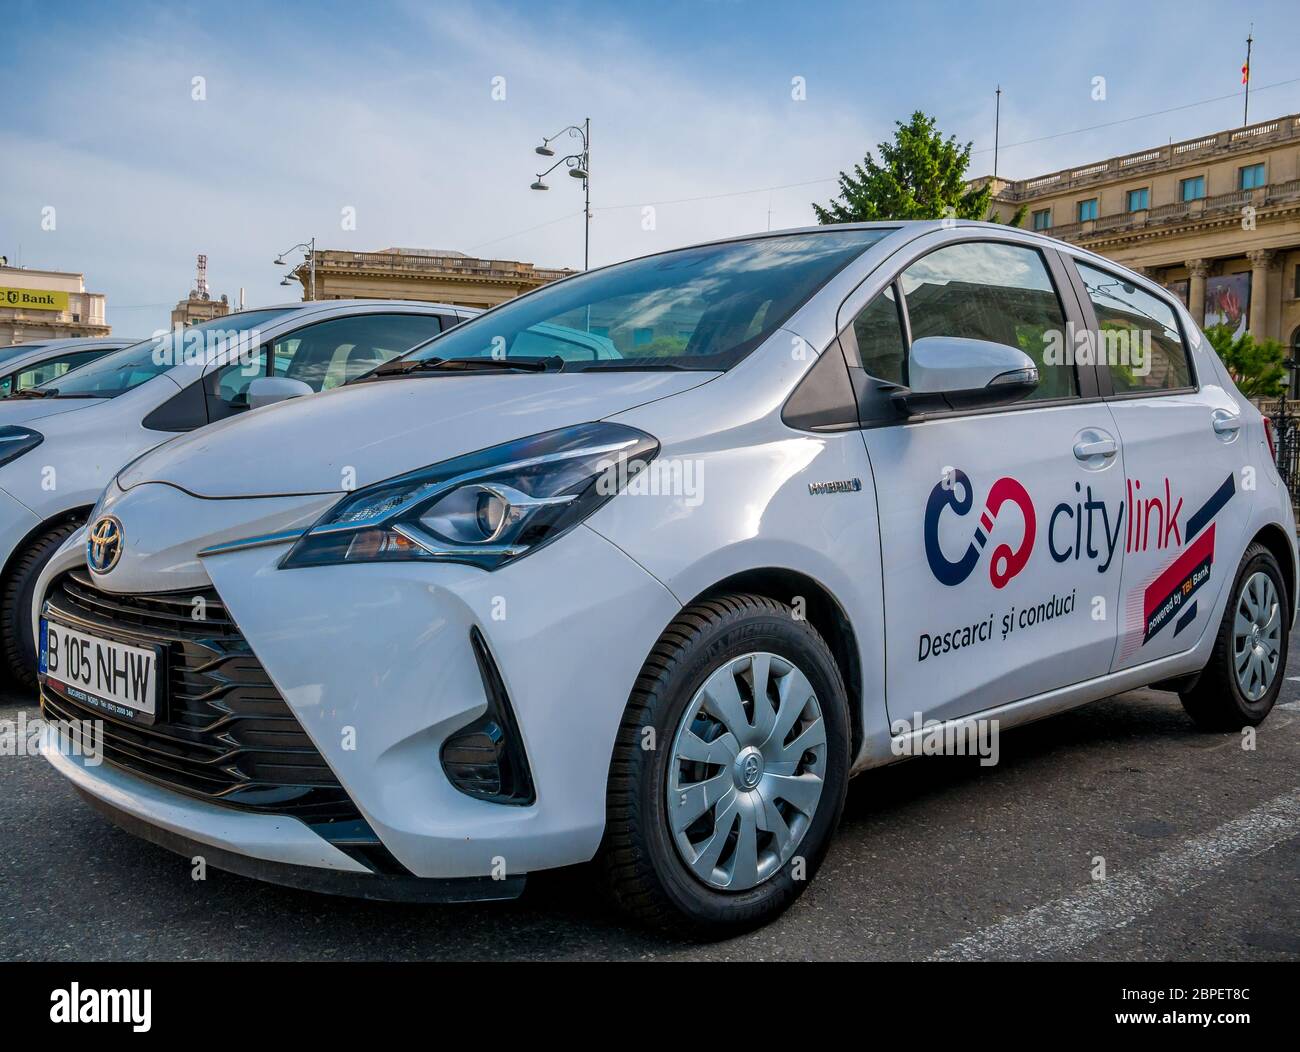 Bucarest/Roumanie - 05.16.2020: Service de location de voitures Citylink à Bucarest. Voitures hybrides Toyota pour la location ou le partage de voiture. Banque D'Images